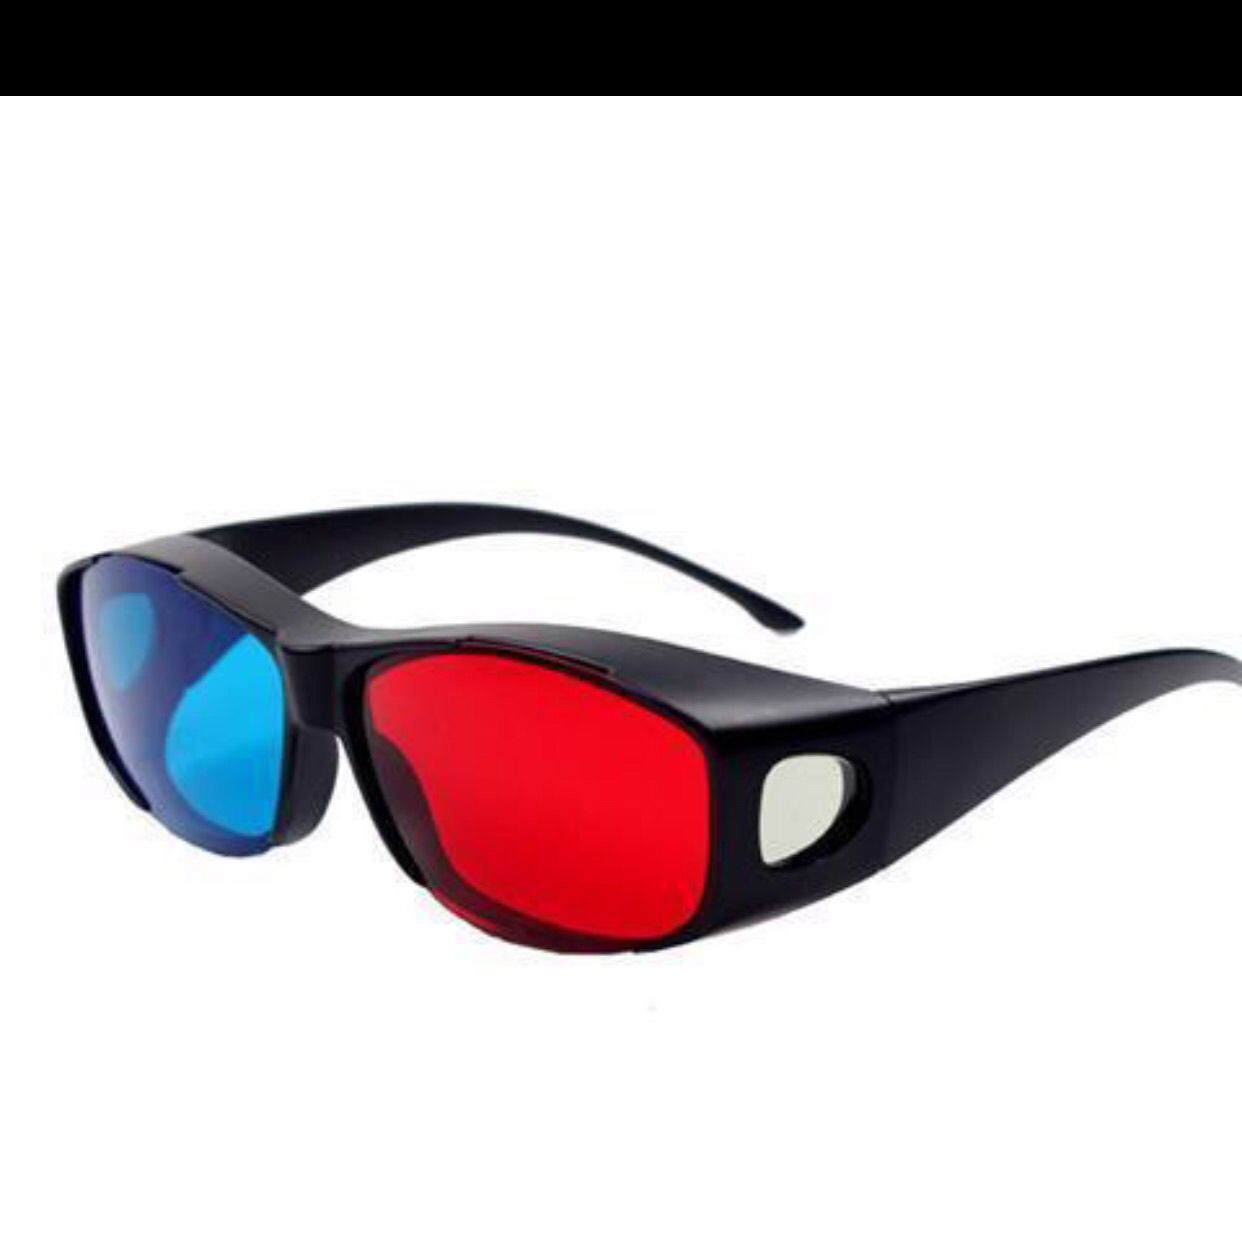 新品红蓝3d眼镜电脑手机暴风影音电视电影3D立体眼镜眼睛近视通品